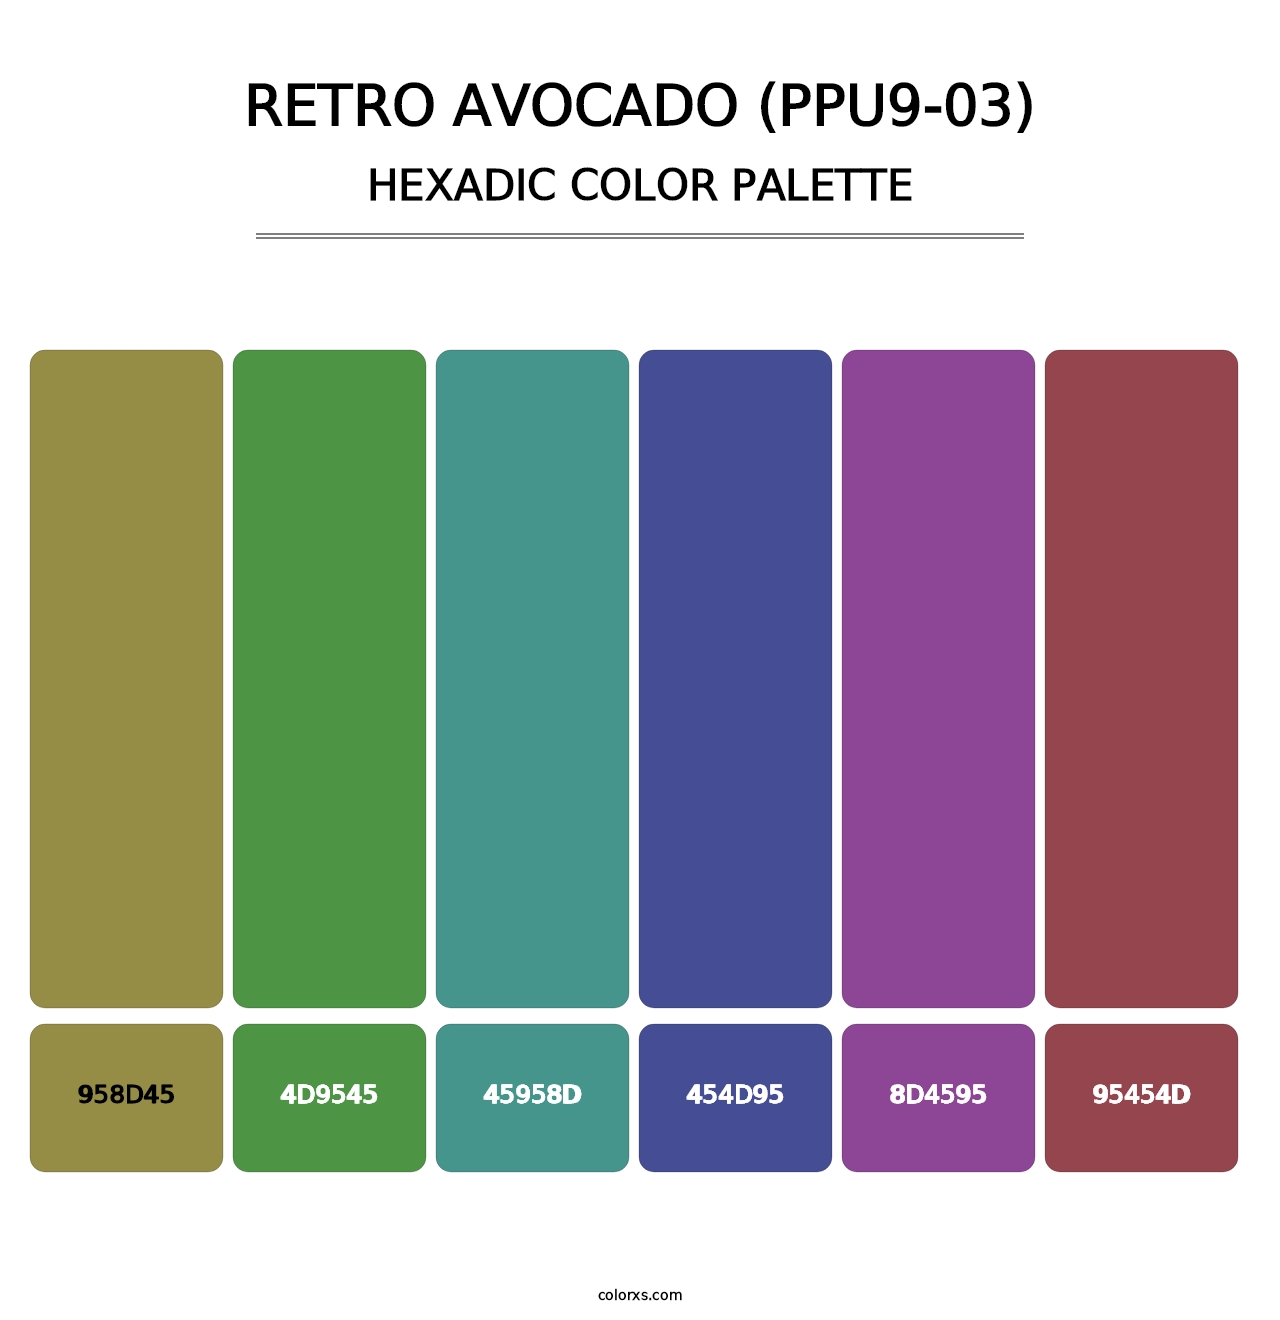 Retro Avocado (PPU9-03) - Hexadic Color Palette